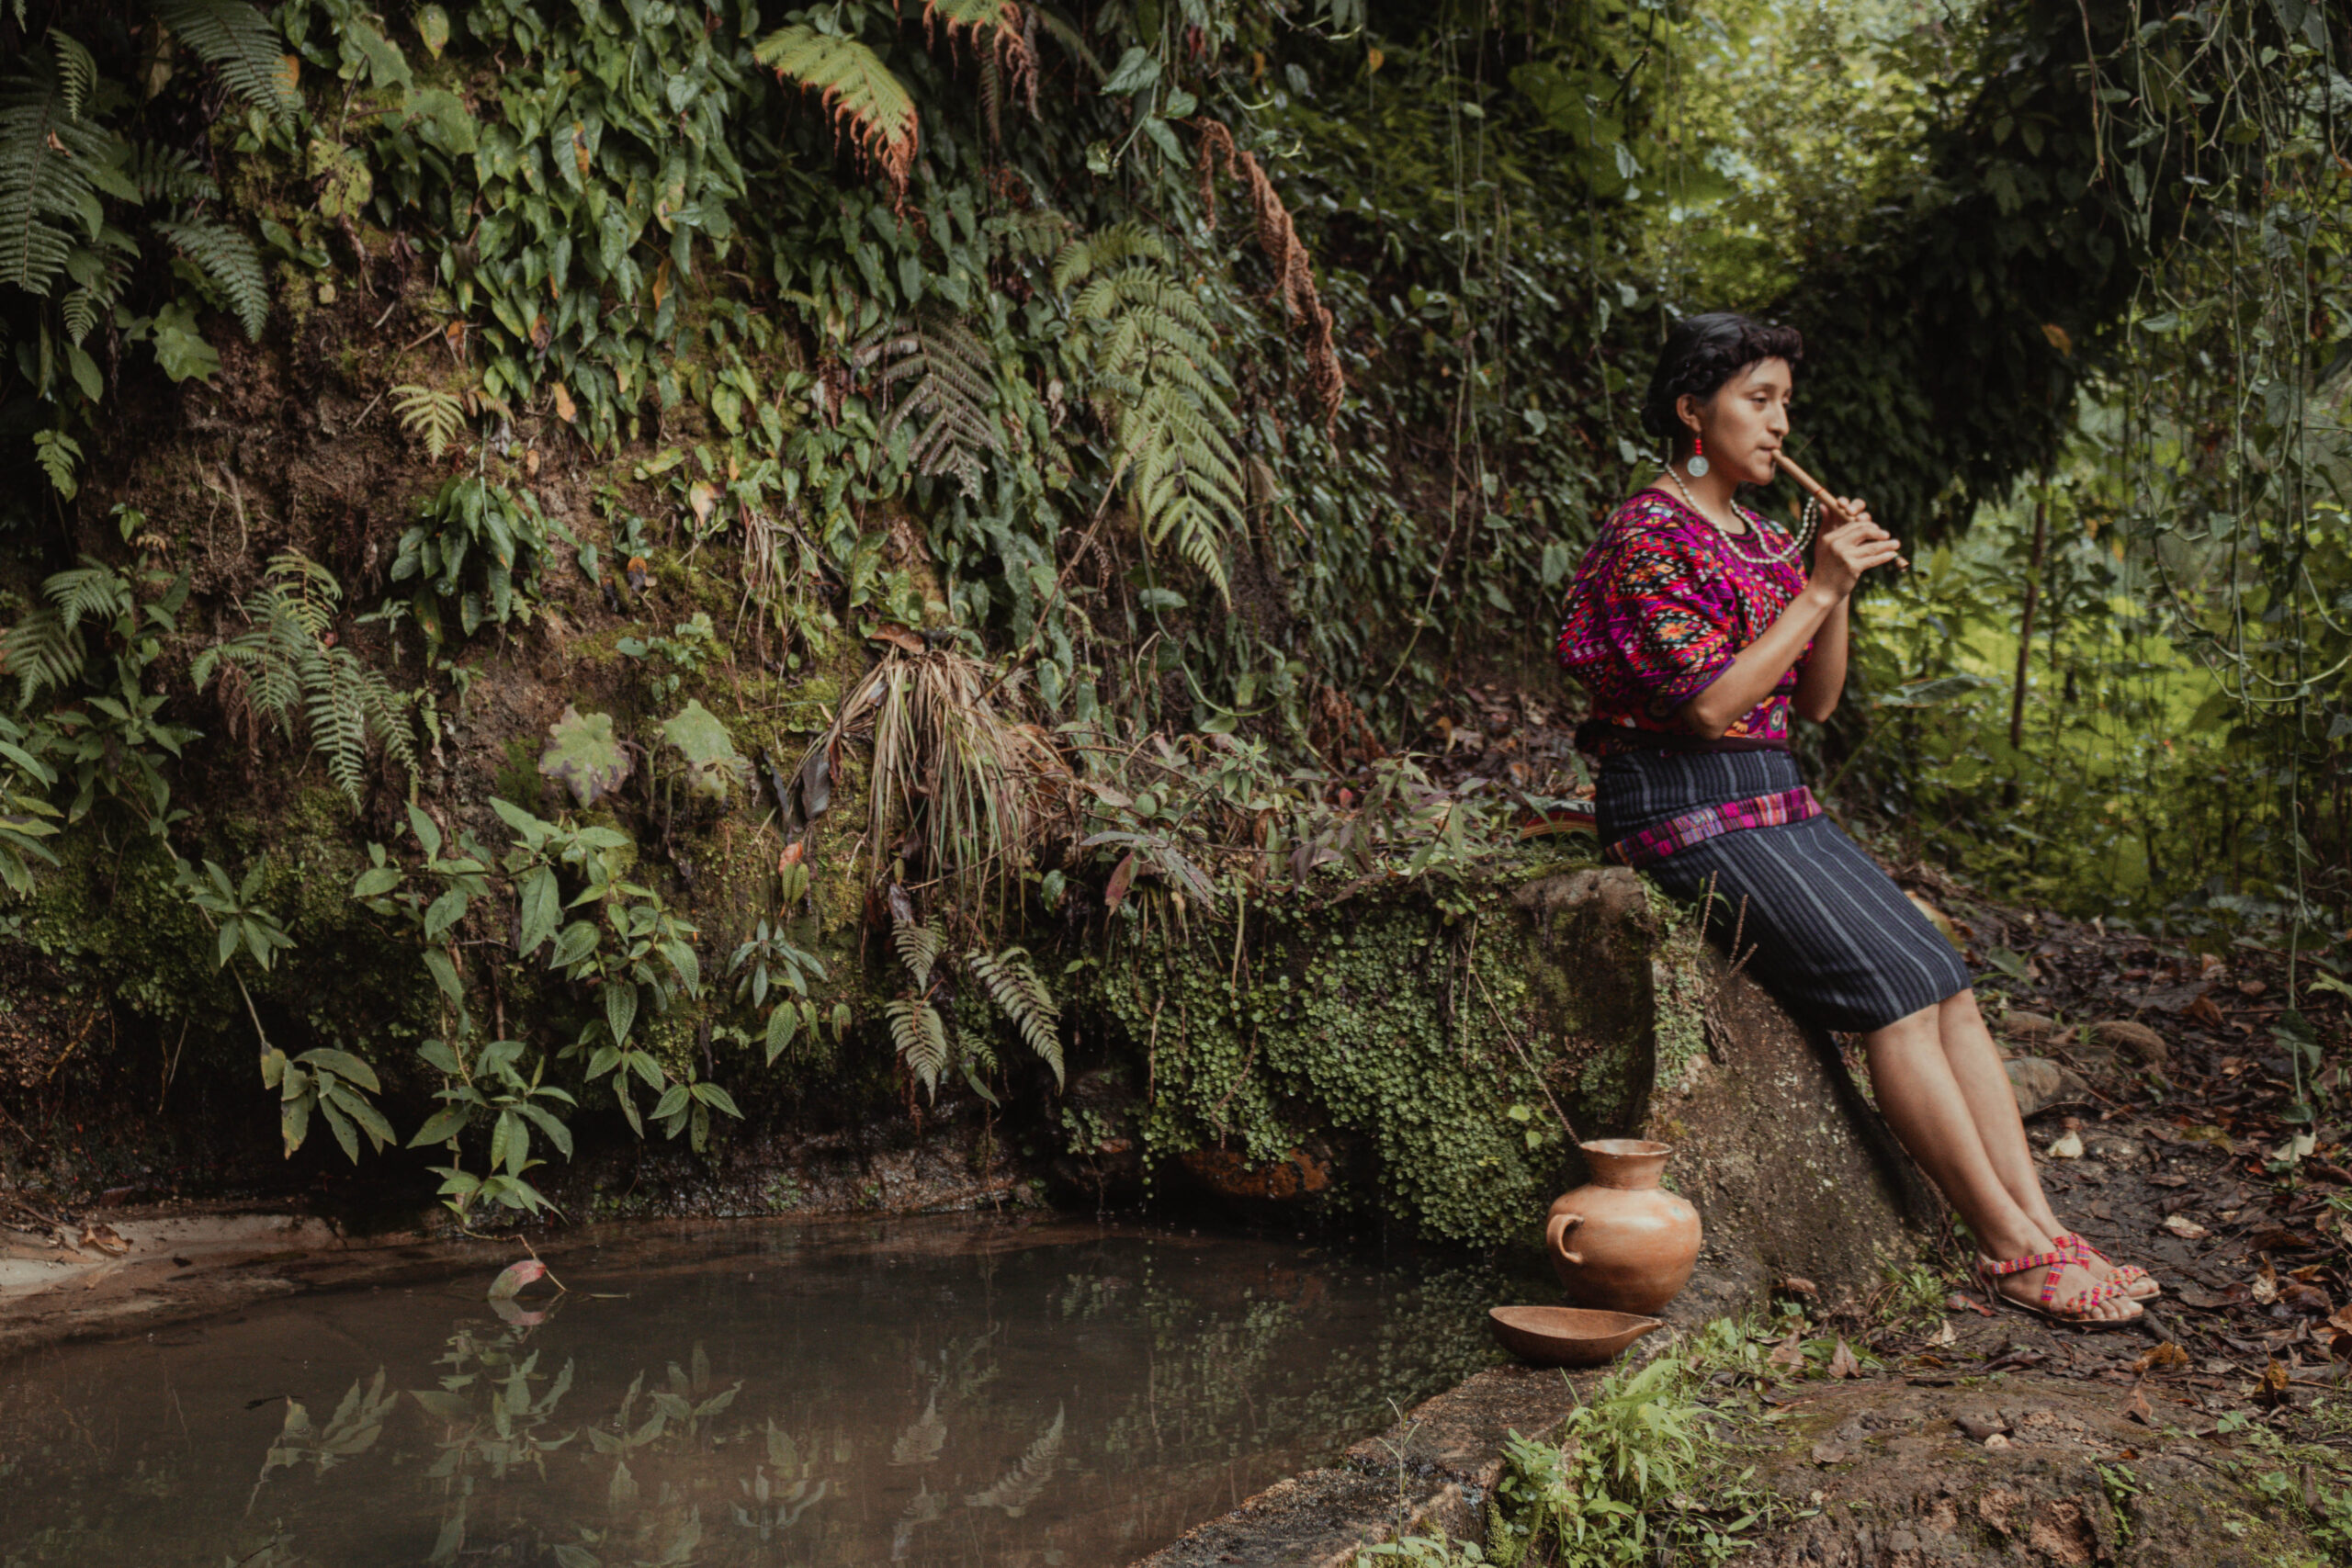 Jeune femme autochtone du peuple Quiché Maya du Guatemala à côté d'une source d'eau avec des offrandes en remerciement à la nature. 
Gagnants du Concours Photo “Solutions Innovatrices des Peuples Autochtones”
Nom de la photo : Enfants de la terre. Auteur : Alexandre Pérez Ventura